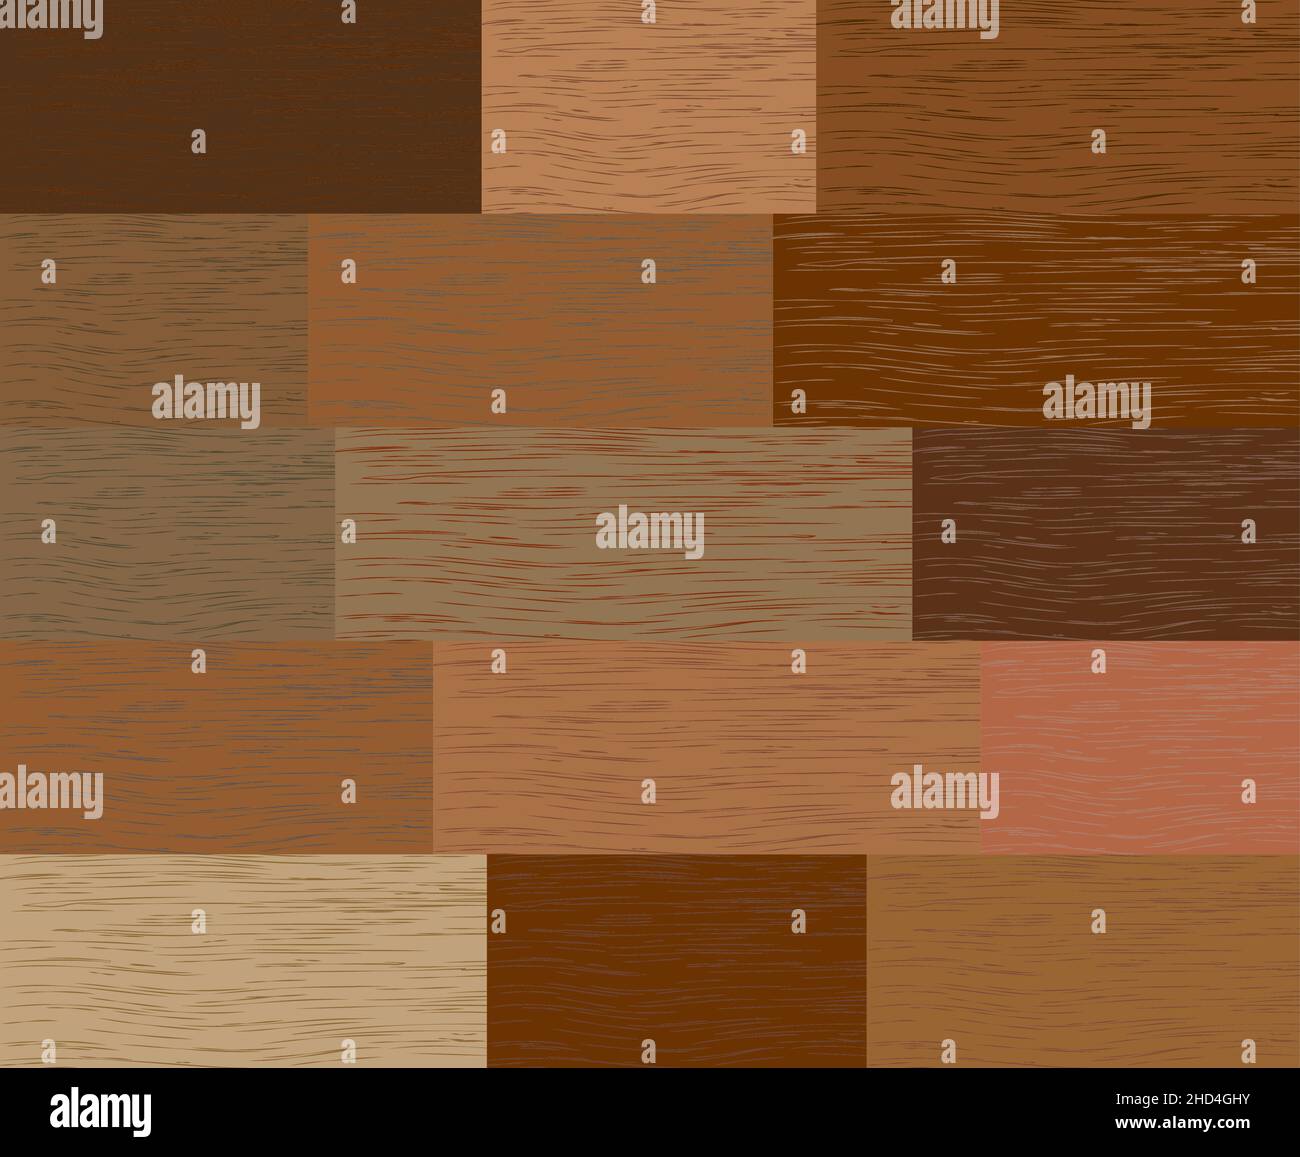 Texture de la planche de parquet composée d'échantillons de bois de différentes couleurs et réalistes Illustration de Vecteur